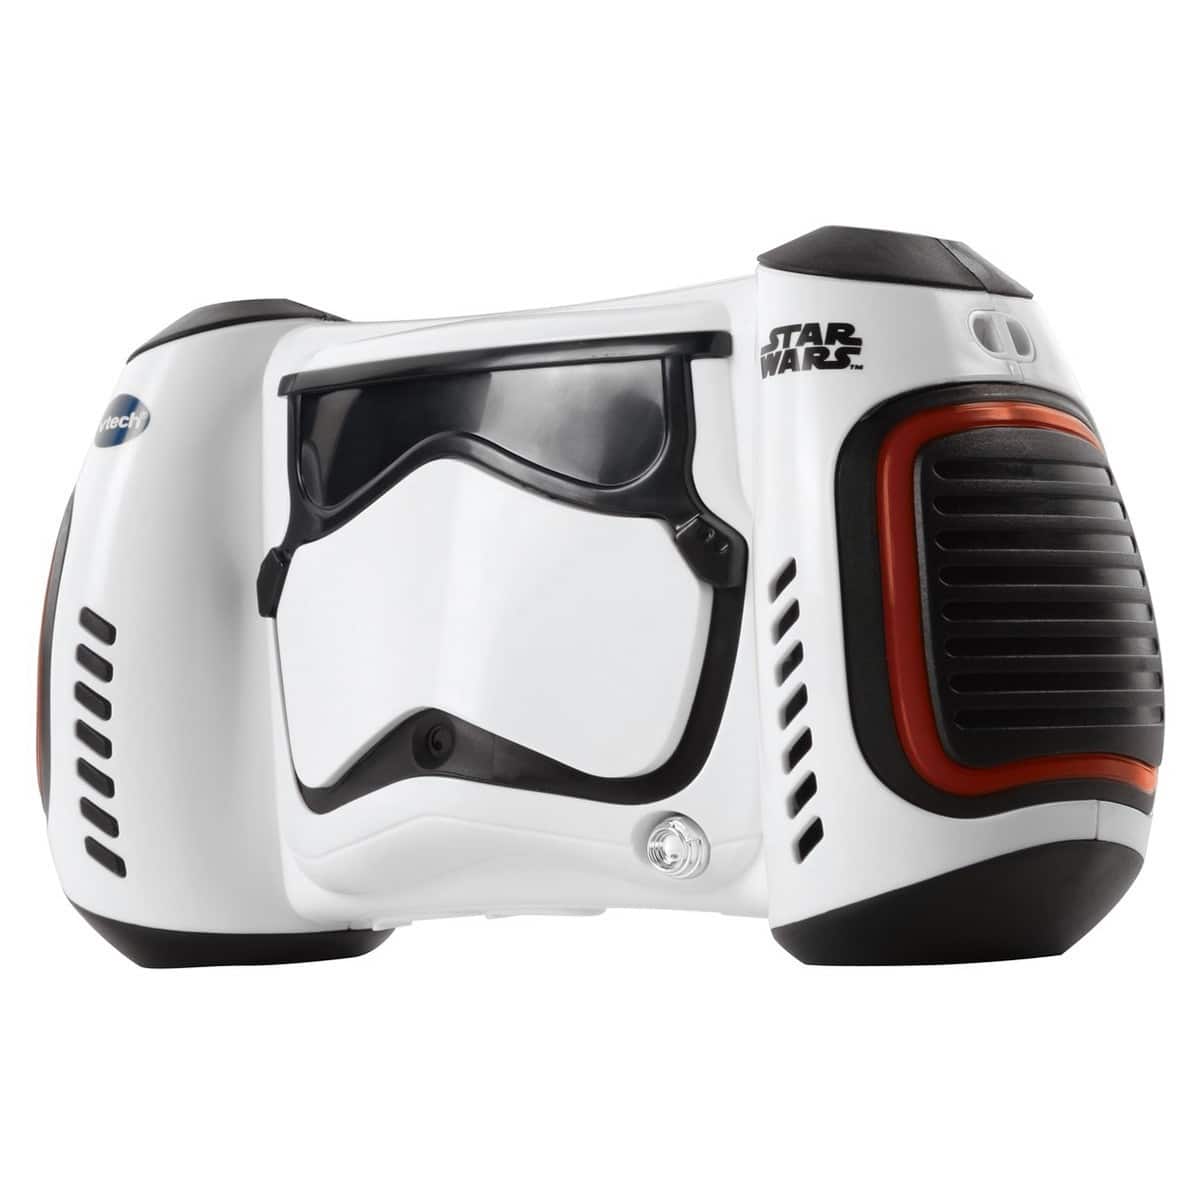 Vtech - Star Wars Stormtrooper Digital Camera